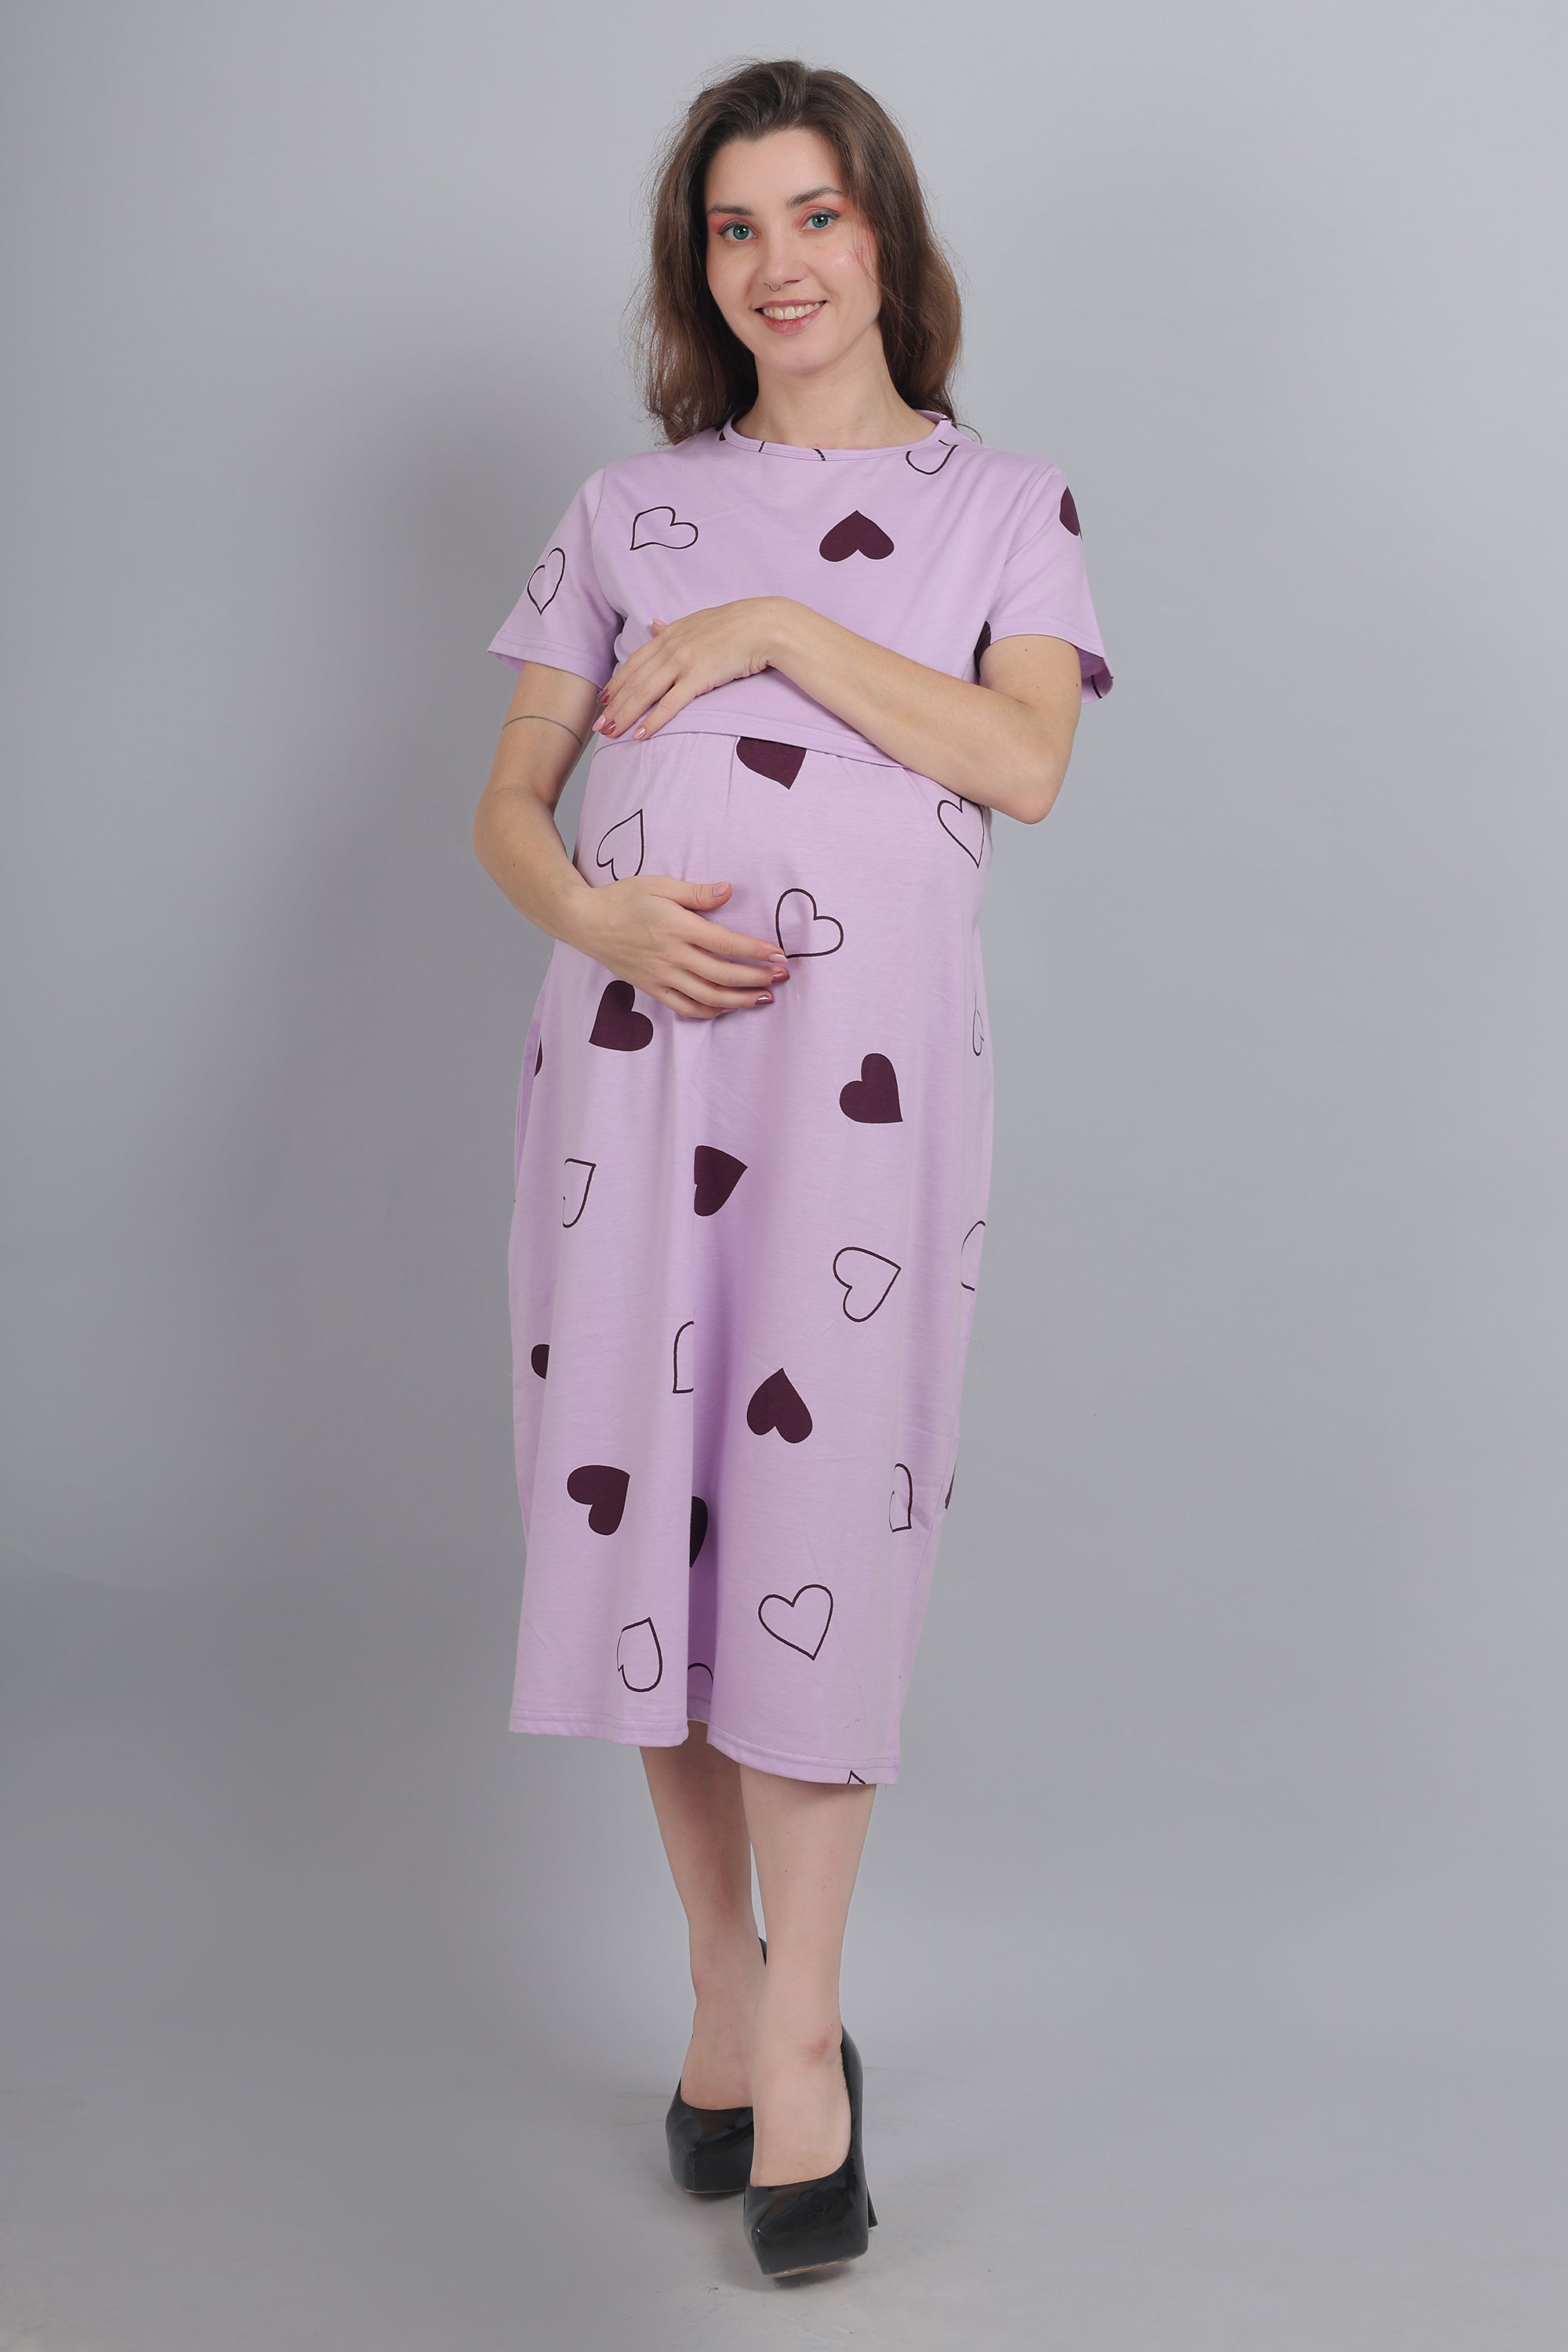 Shop Women's Maternity Nightwear